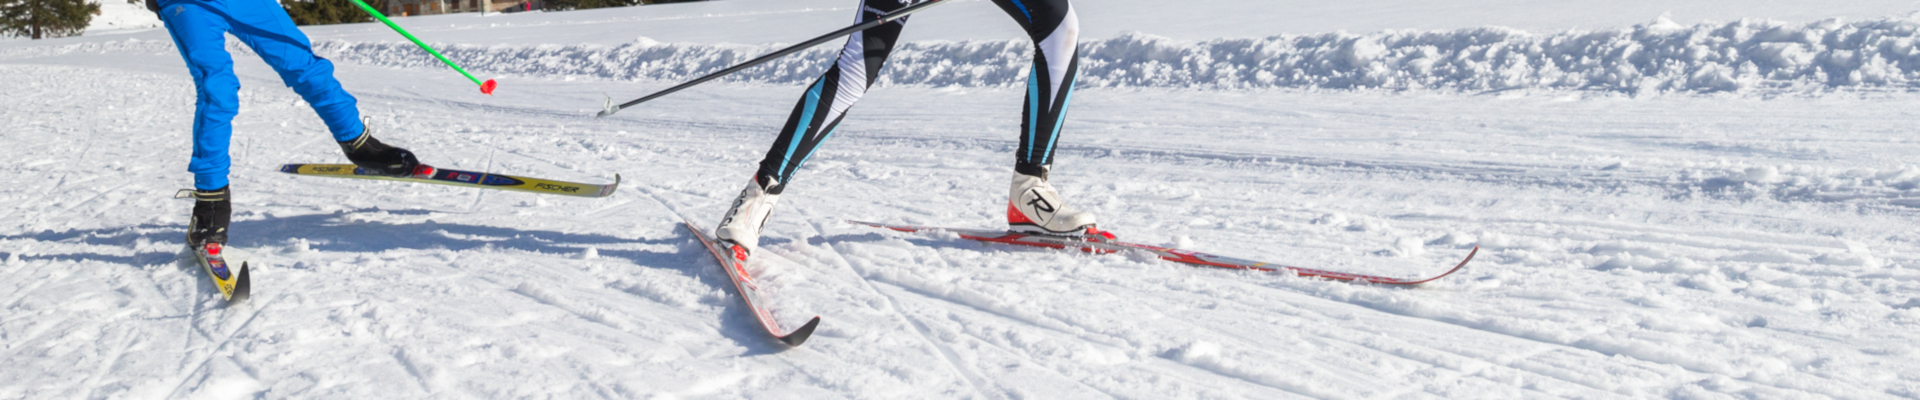 Nordic skiing in Bozel